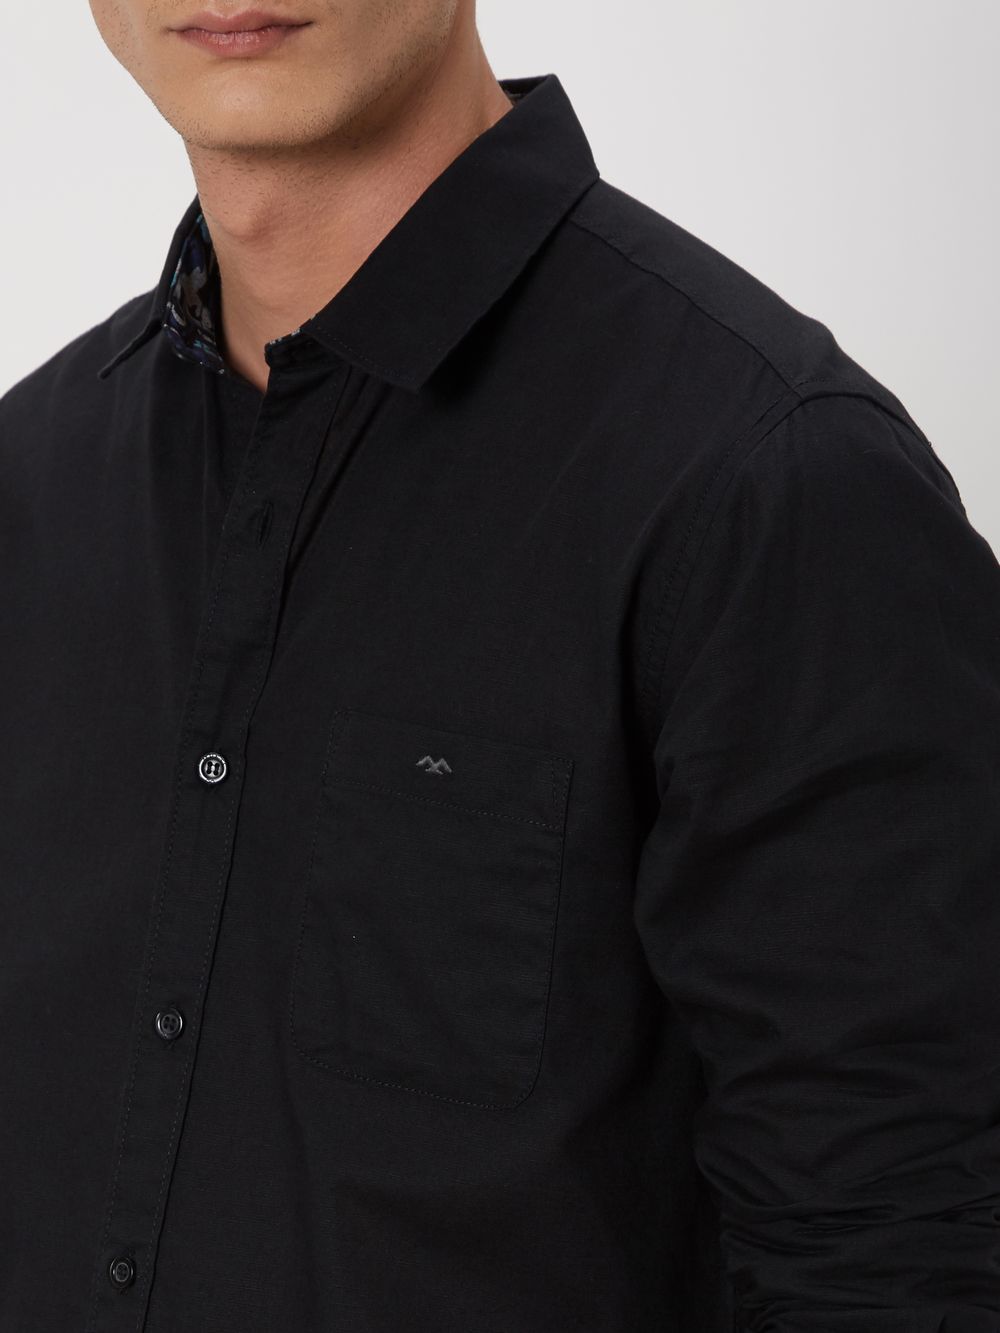 Black Cotton Linen Plain Shirt 